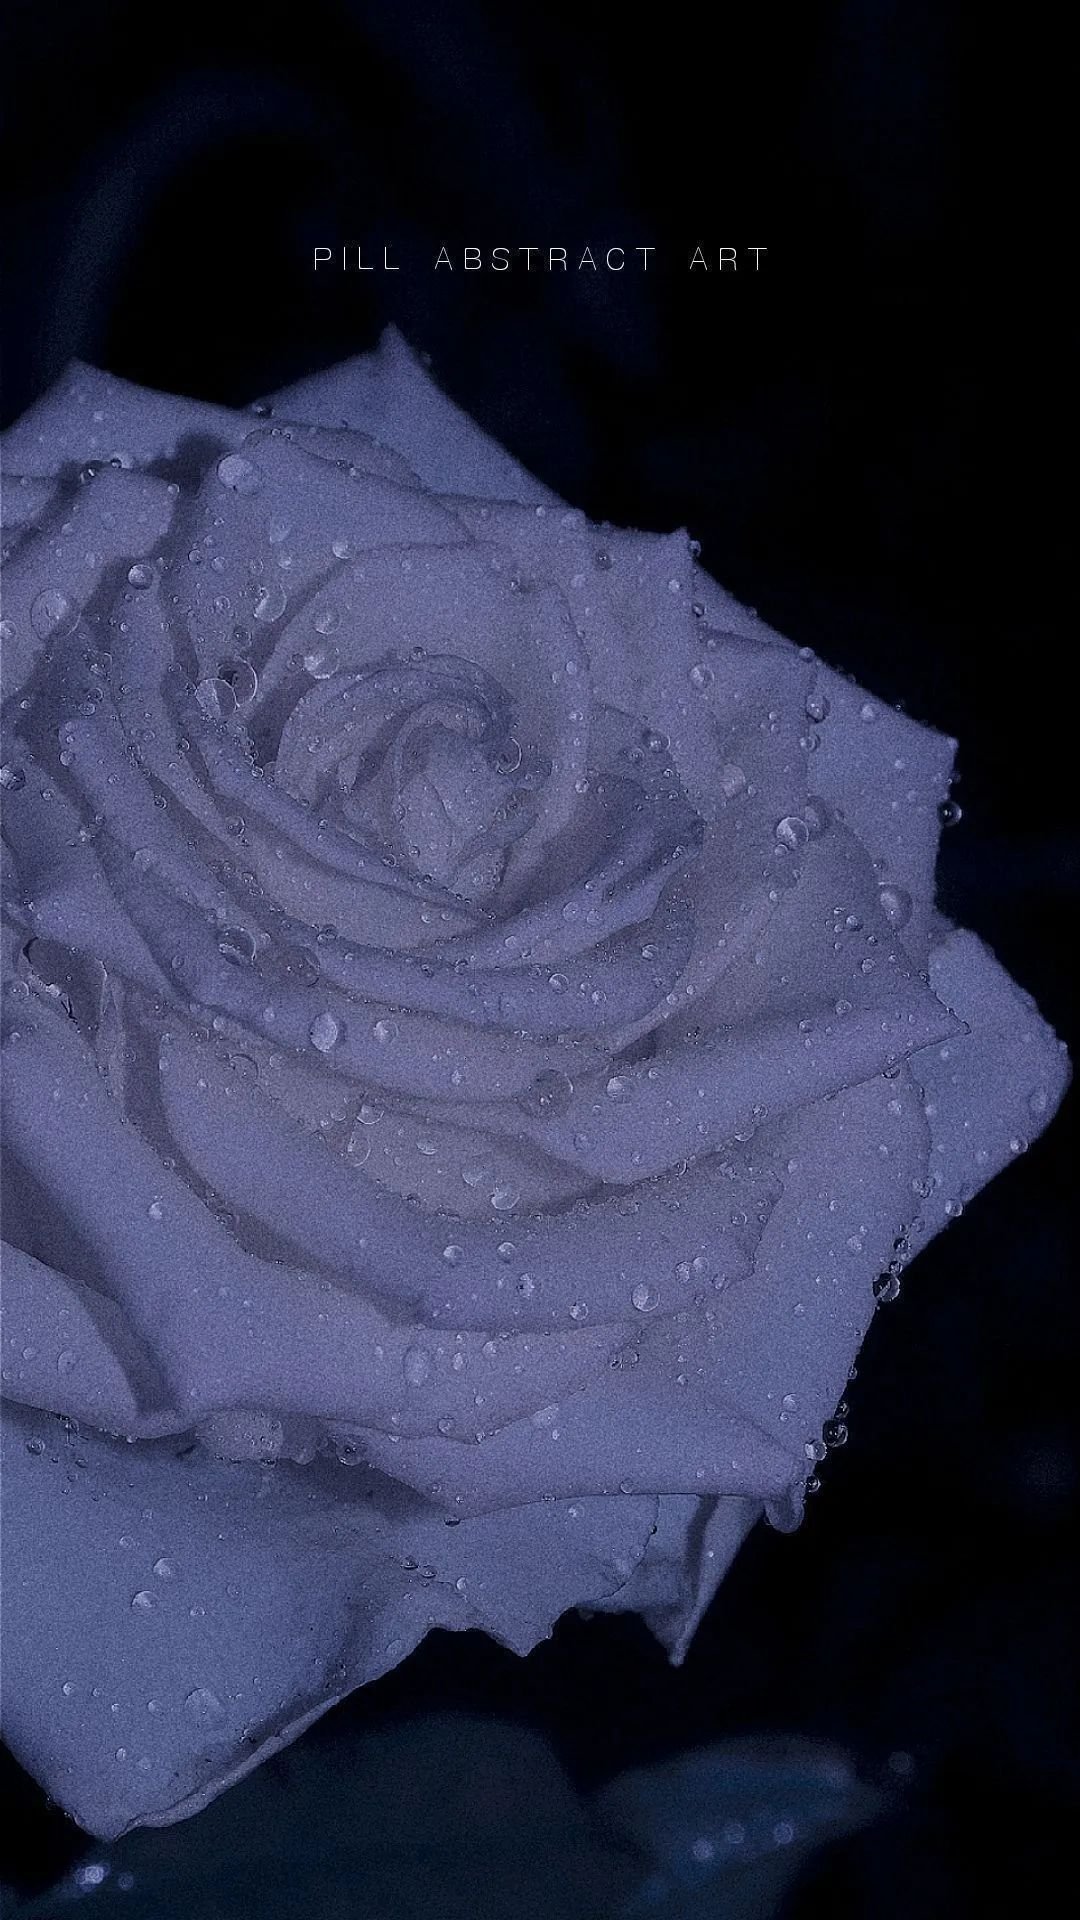 白玫瑰花图片唯美意境图片